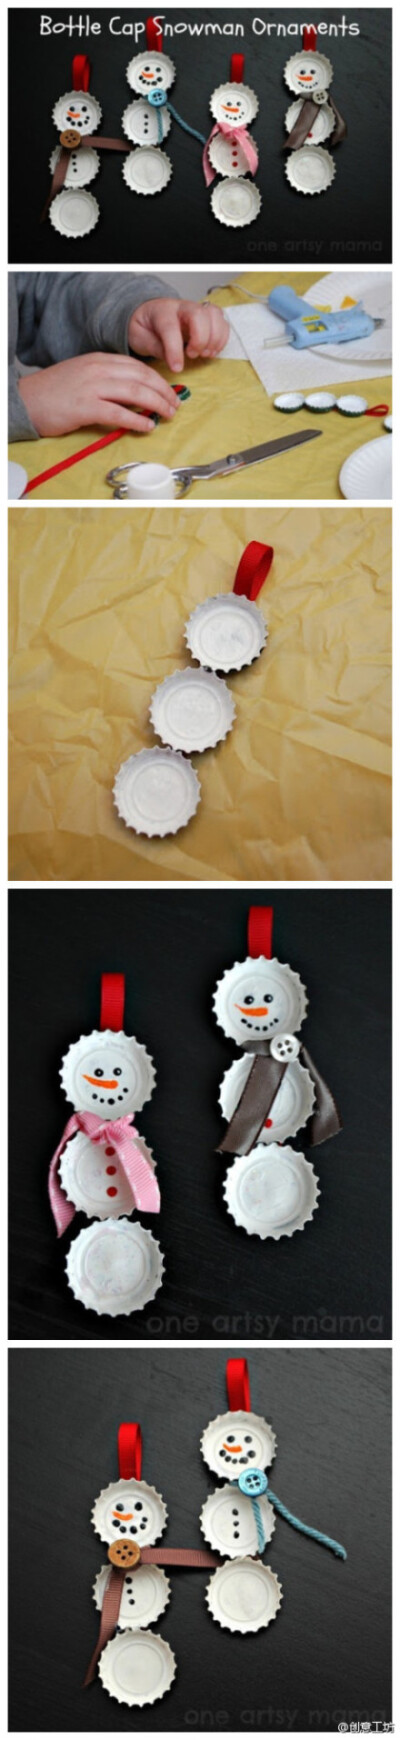 利用废弃的瓶盖制作的小雪人，让这个圣诞节充满小小创意~~